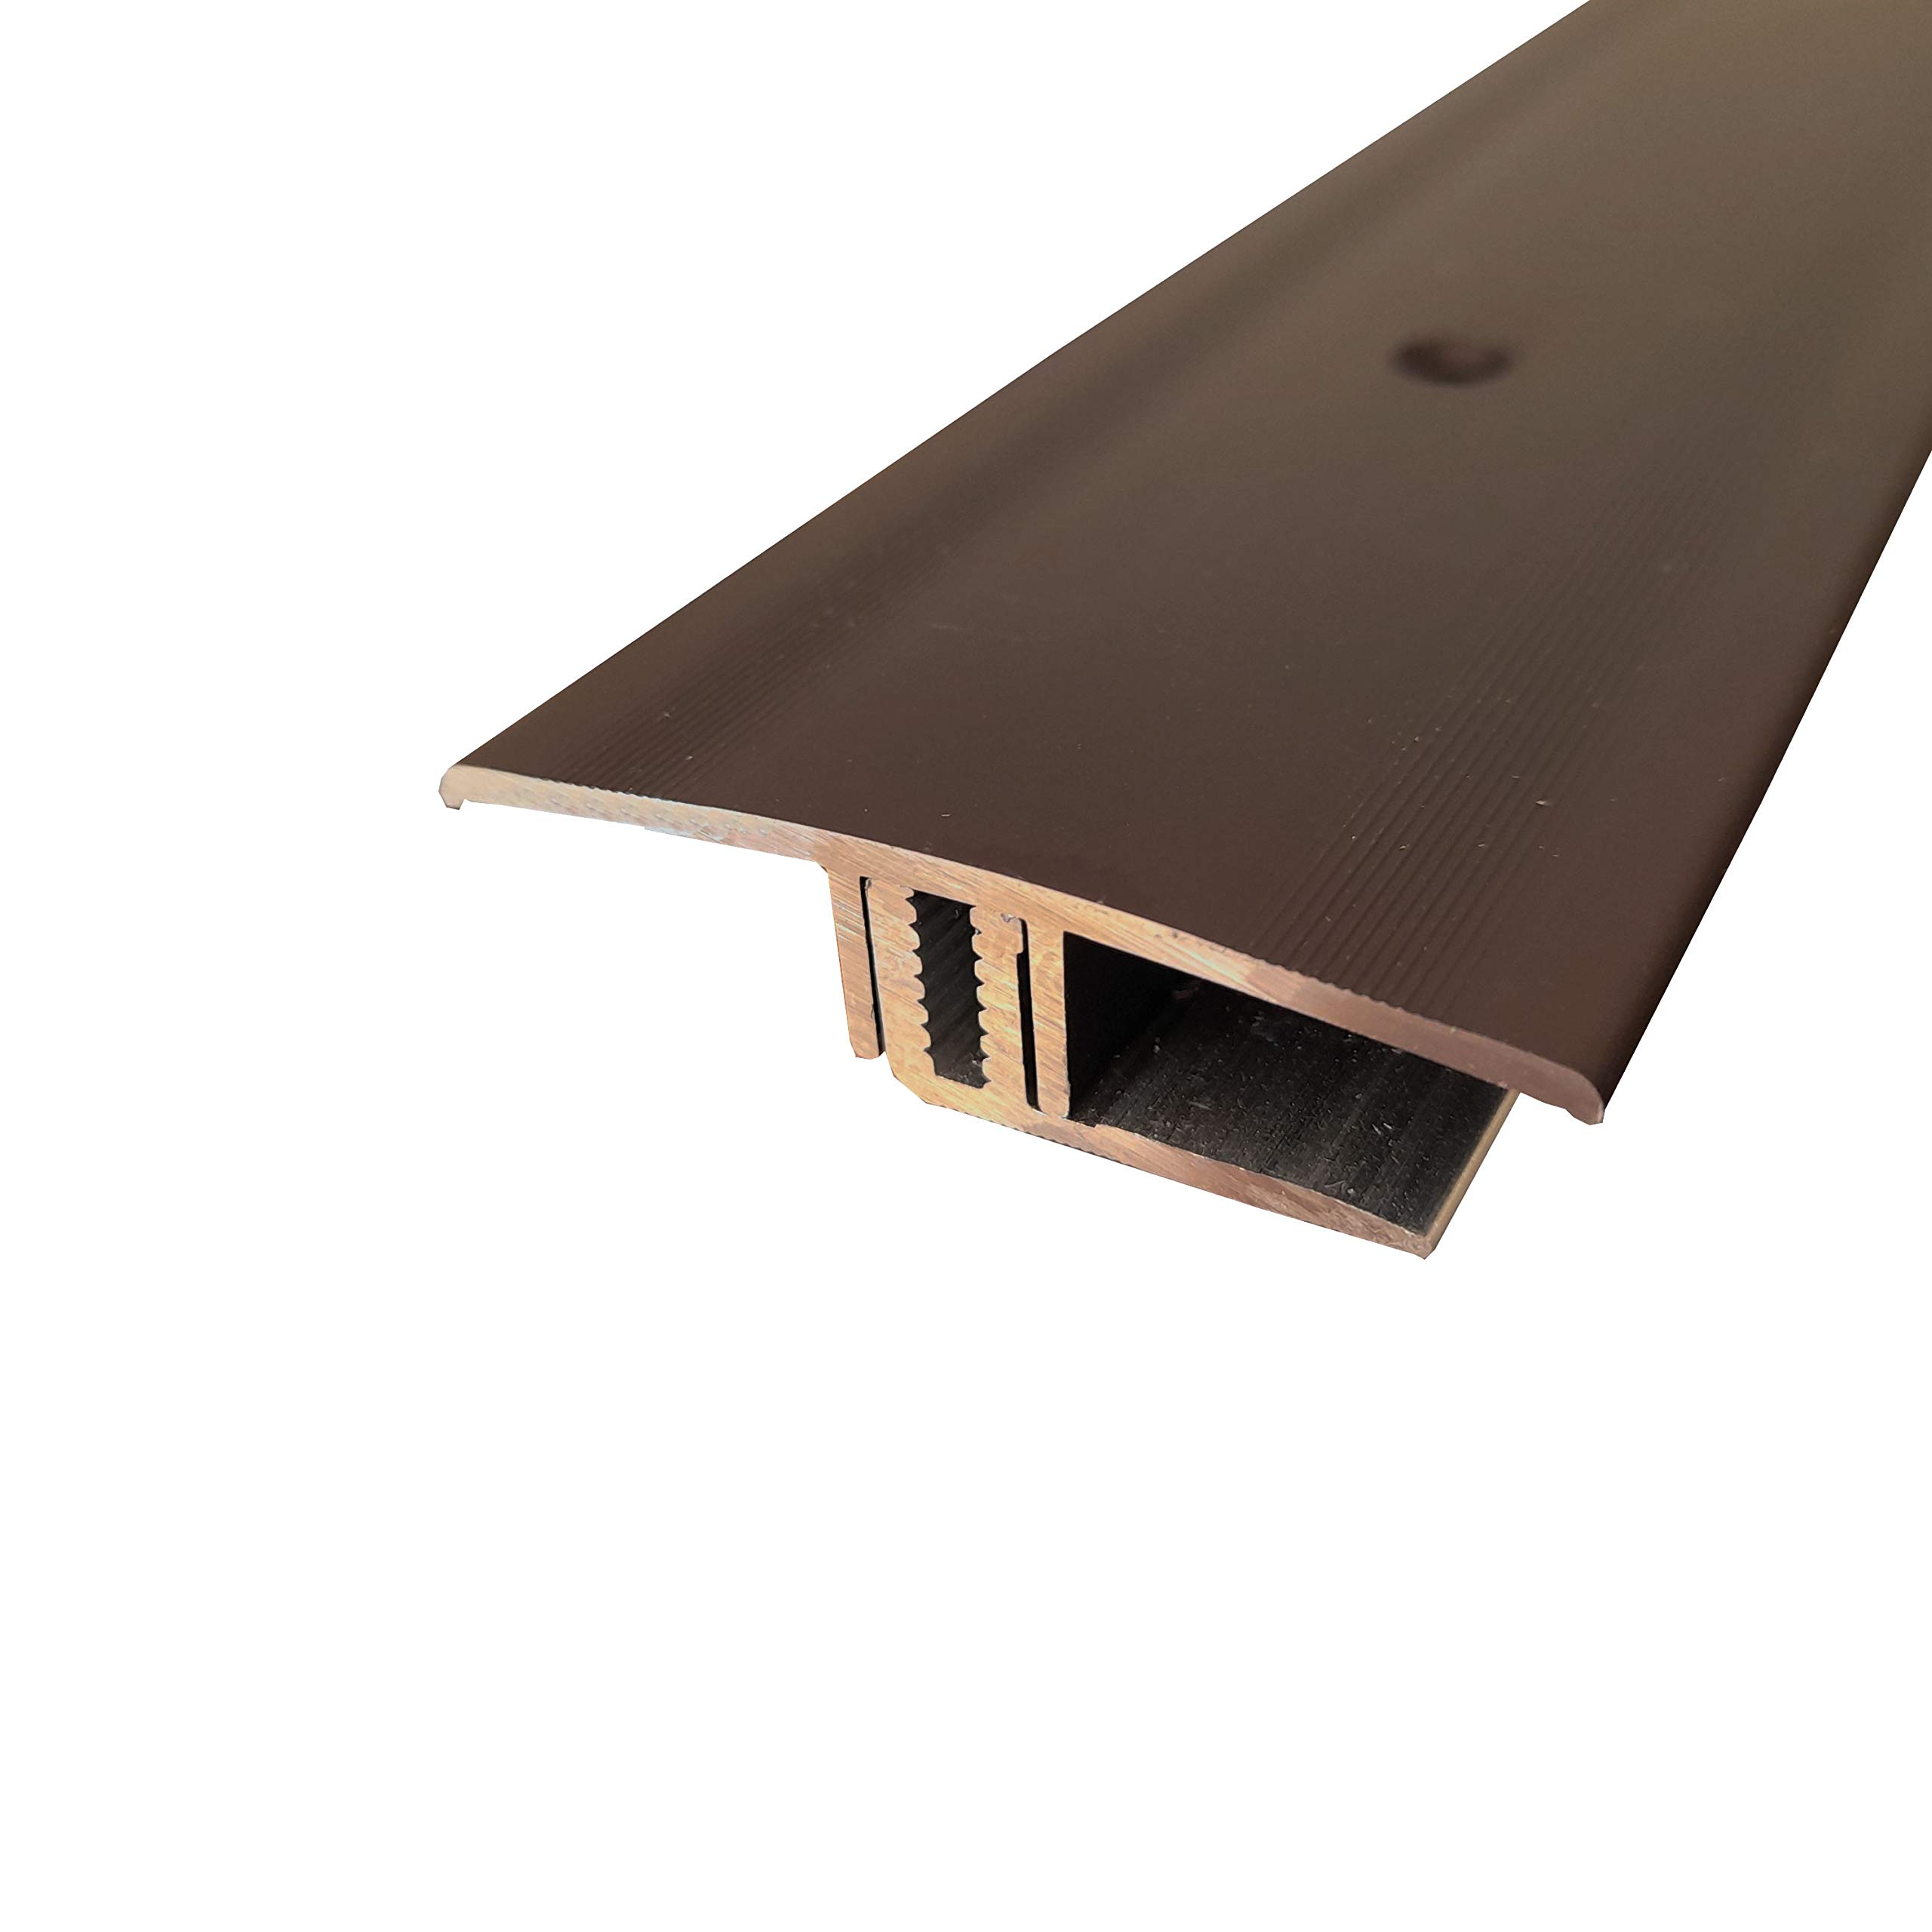 ufitec Profilsystem für Parkett- und Laminatböden - für Belagshöhen von 7-16 mm - viele Farben lieferbar (Übergangsprofil 45 mm Breit, Bronze Dunkel, 270 cm länge)